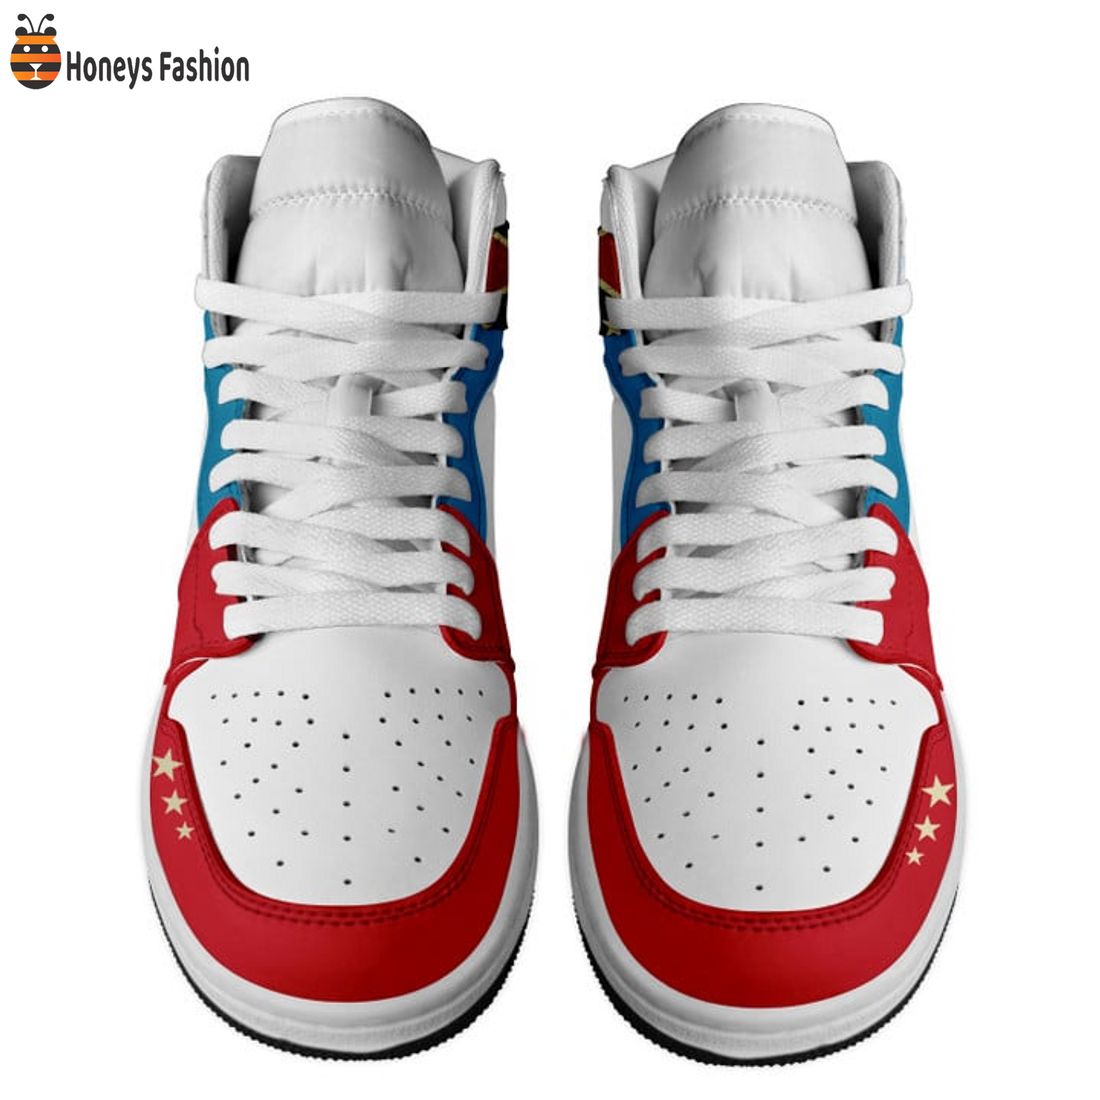 TRENDING Lynyrd Skynyrd Southern Rock Nike Air Jordan 1 High Sneakers